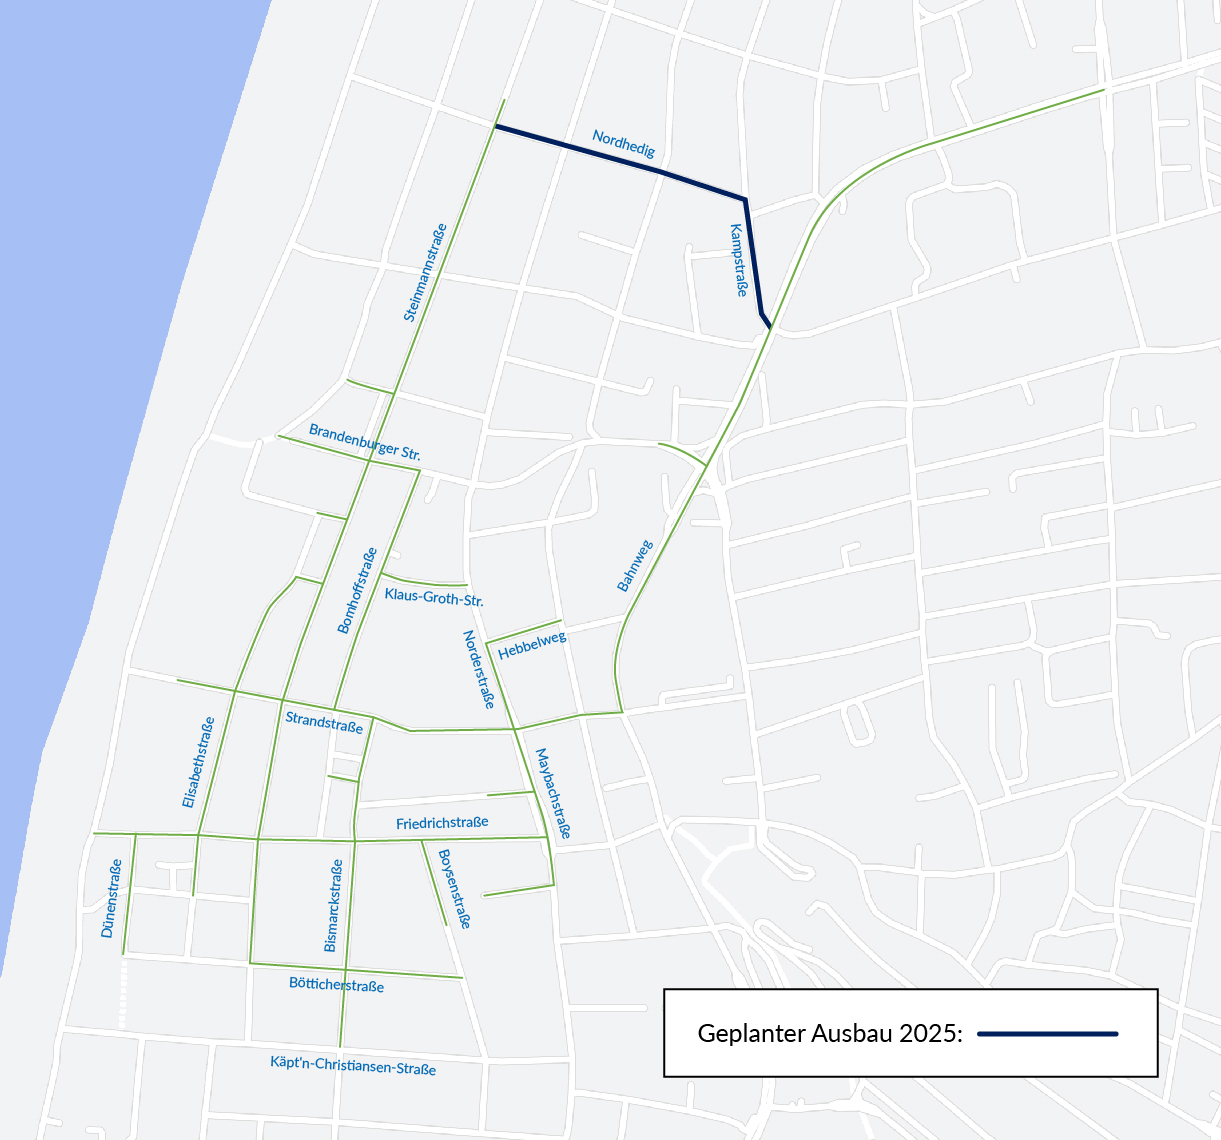 Karte von bestehendem Fernwärmenetz auf Sylt und geplanter Ausbau bis 2025